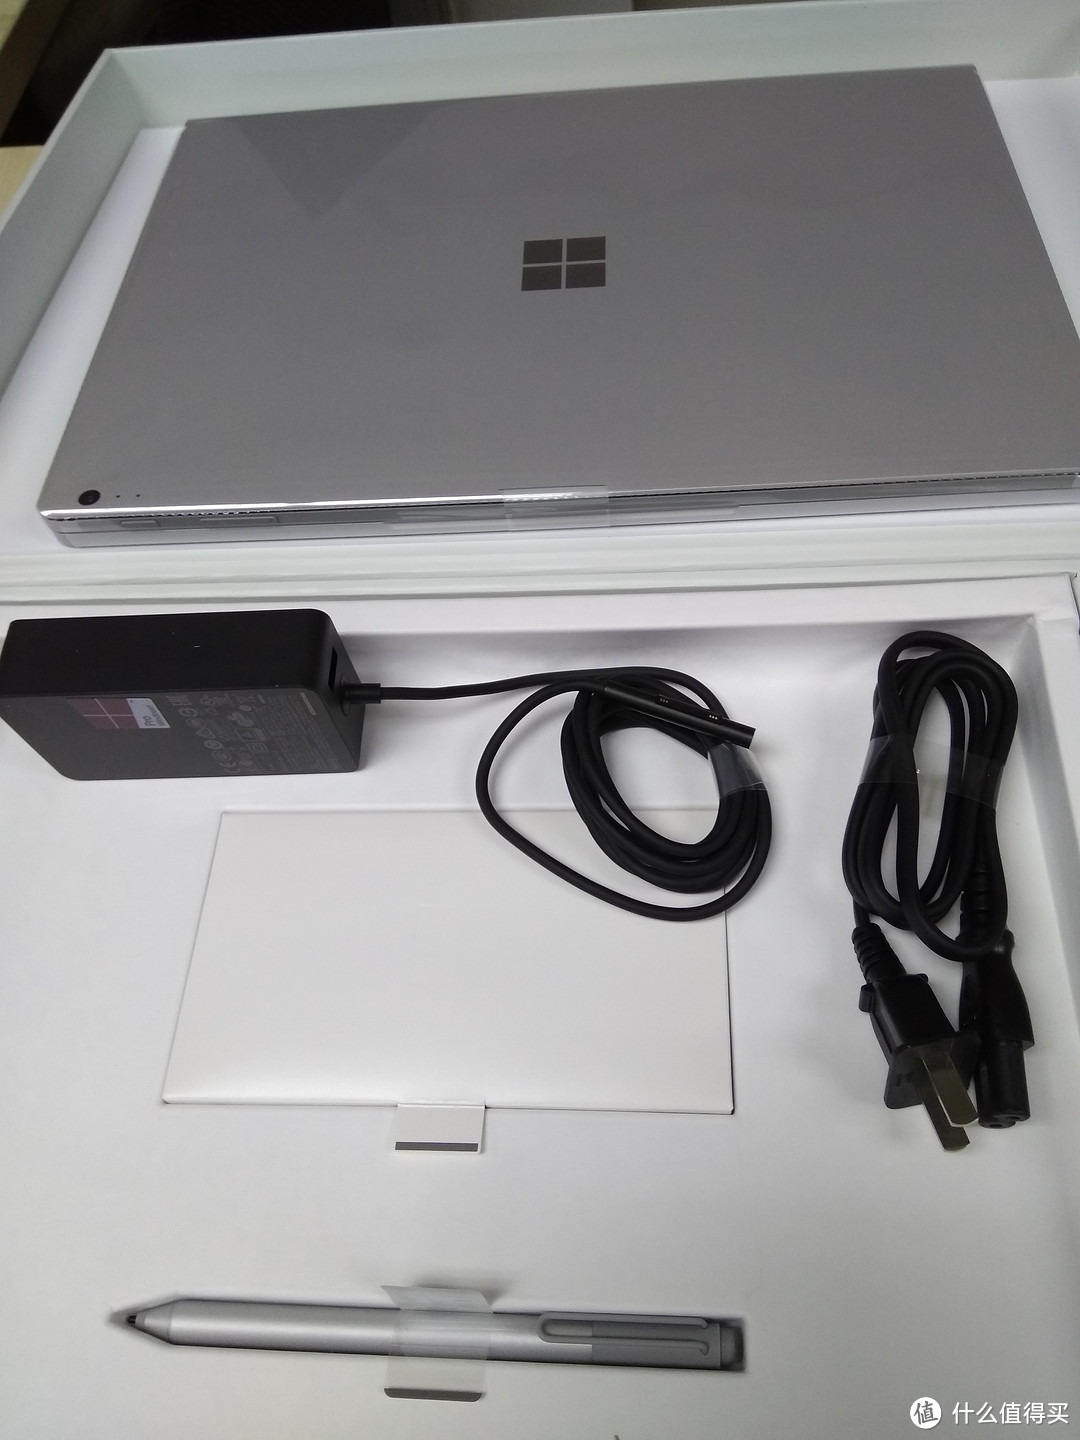 黑五前开箱 Microsoft surface book i7-6600u 8G 256G 笔记本电脑